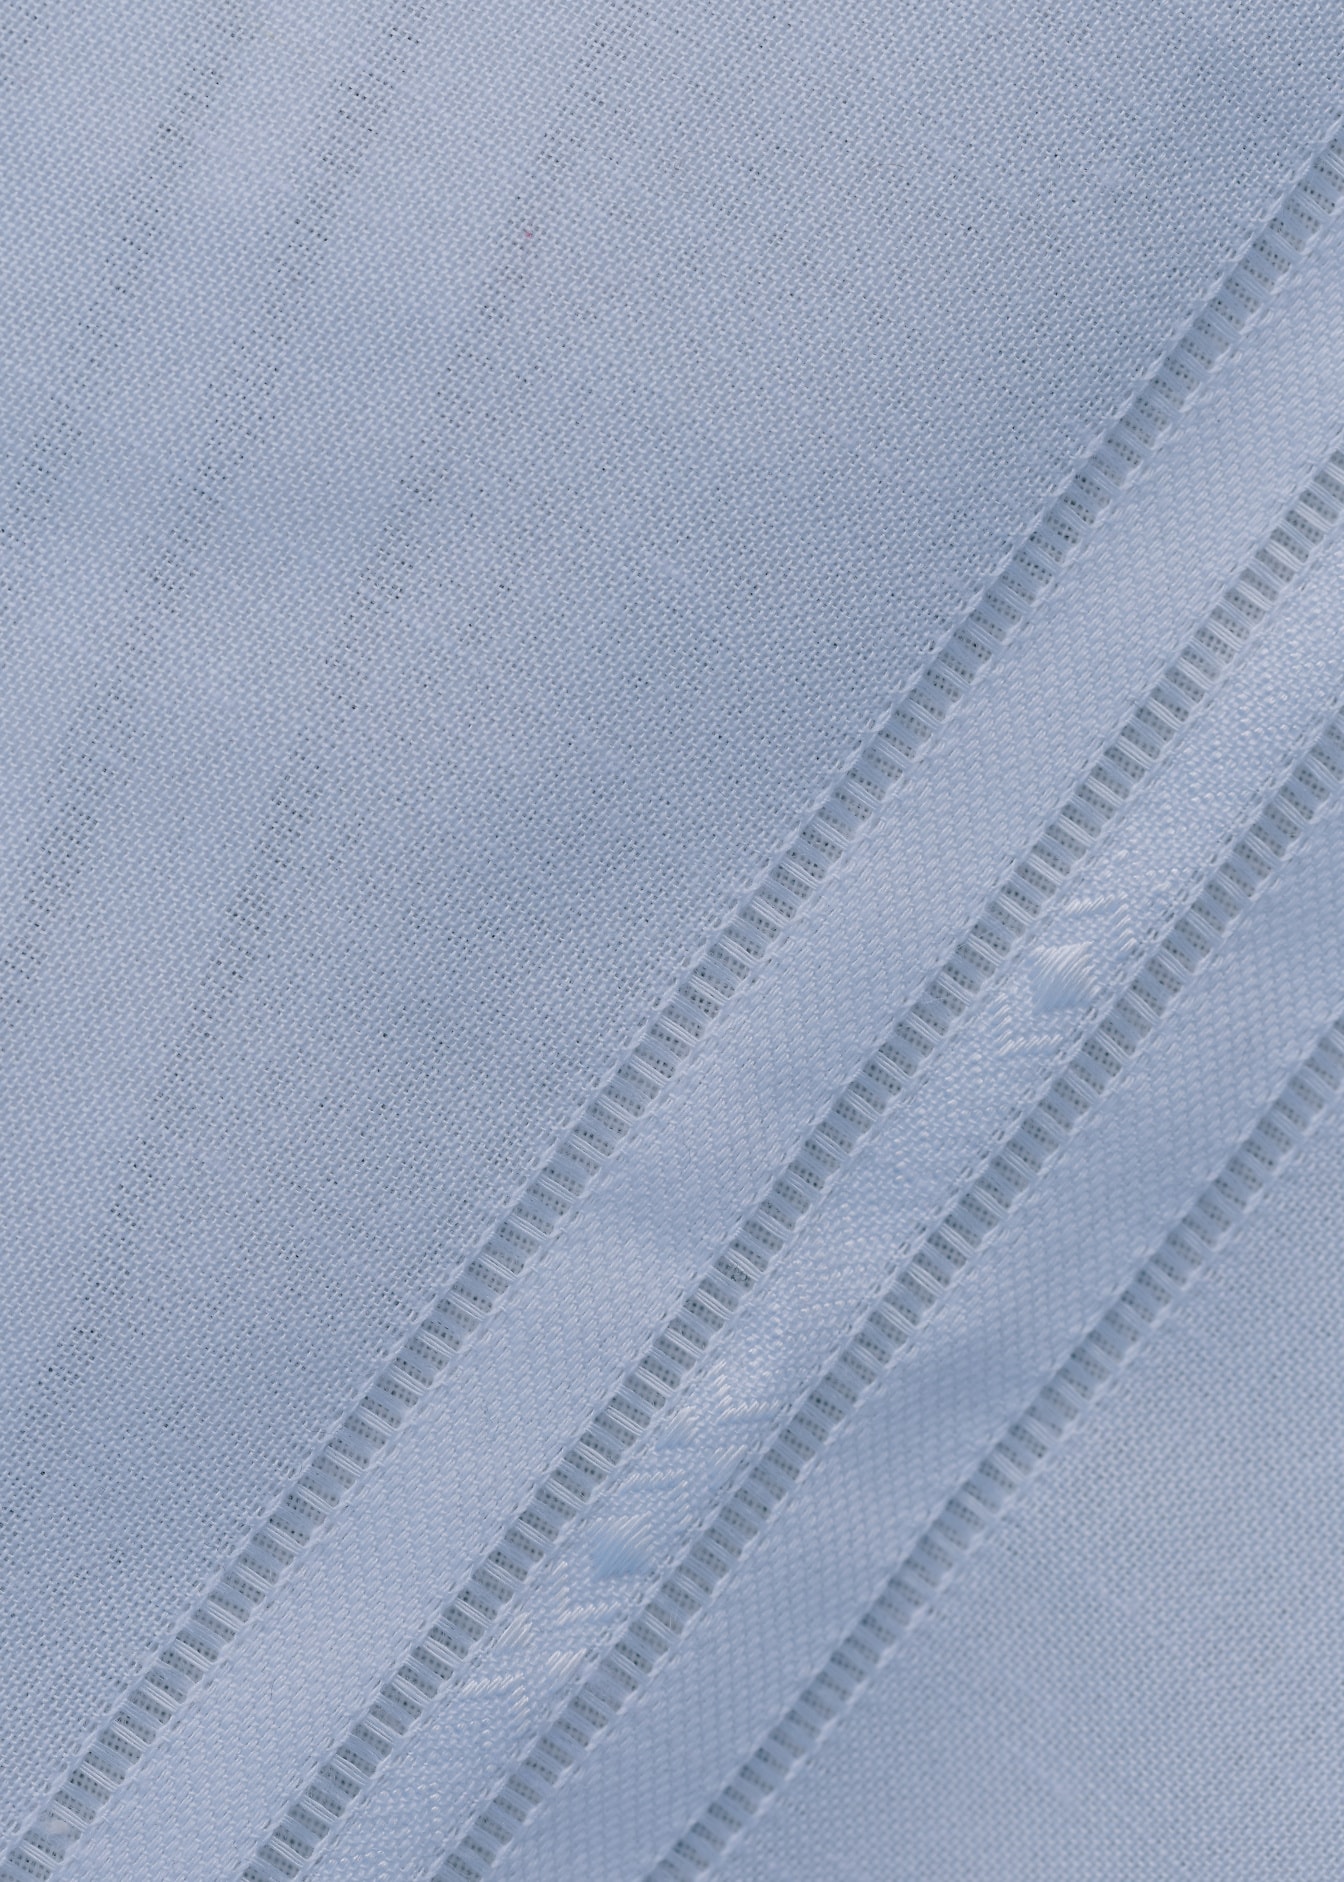 斜めの線が入った白い綿生地の接写